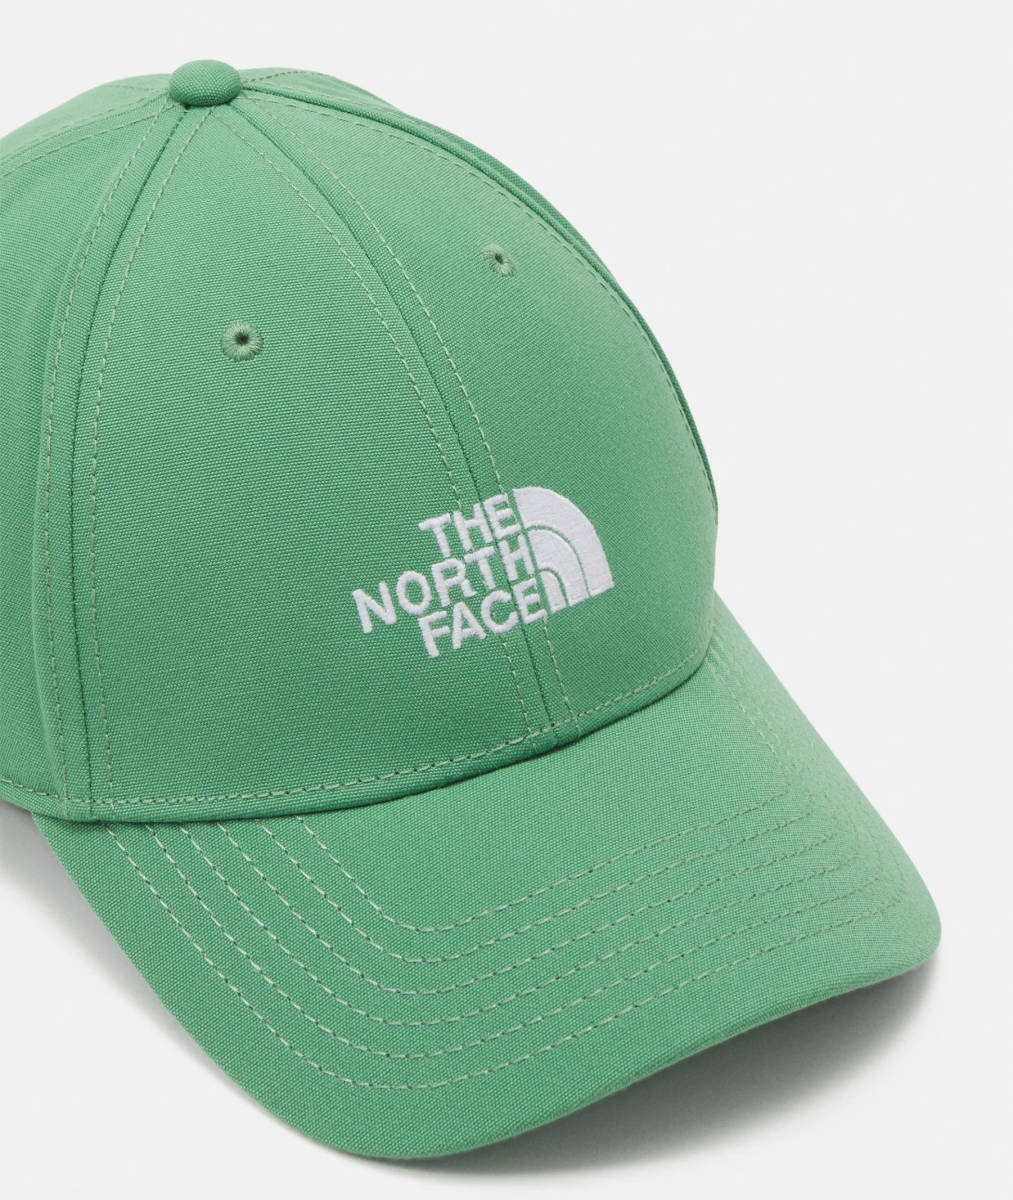  быстрое решение новый товар UK/EU/USA ограничение подлинный товар The North Face North Face Logo вышивка classic колпак шляпа Unisex свободный размер 